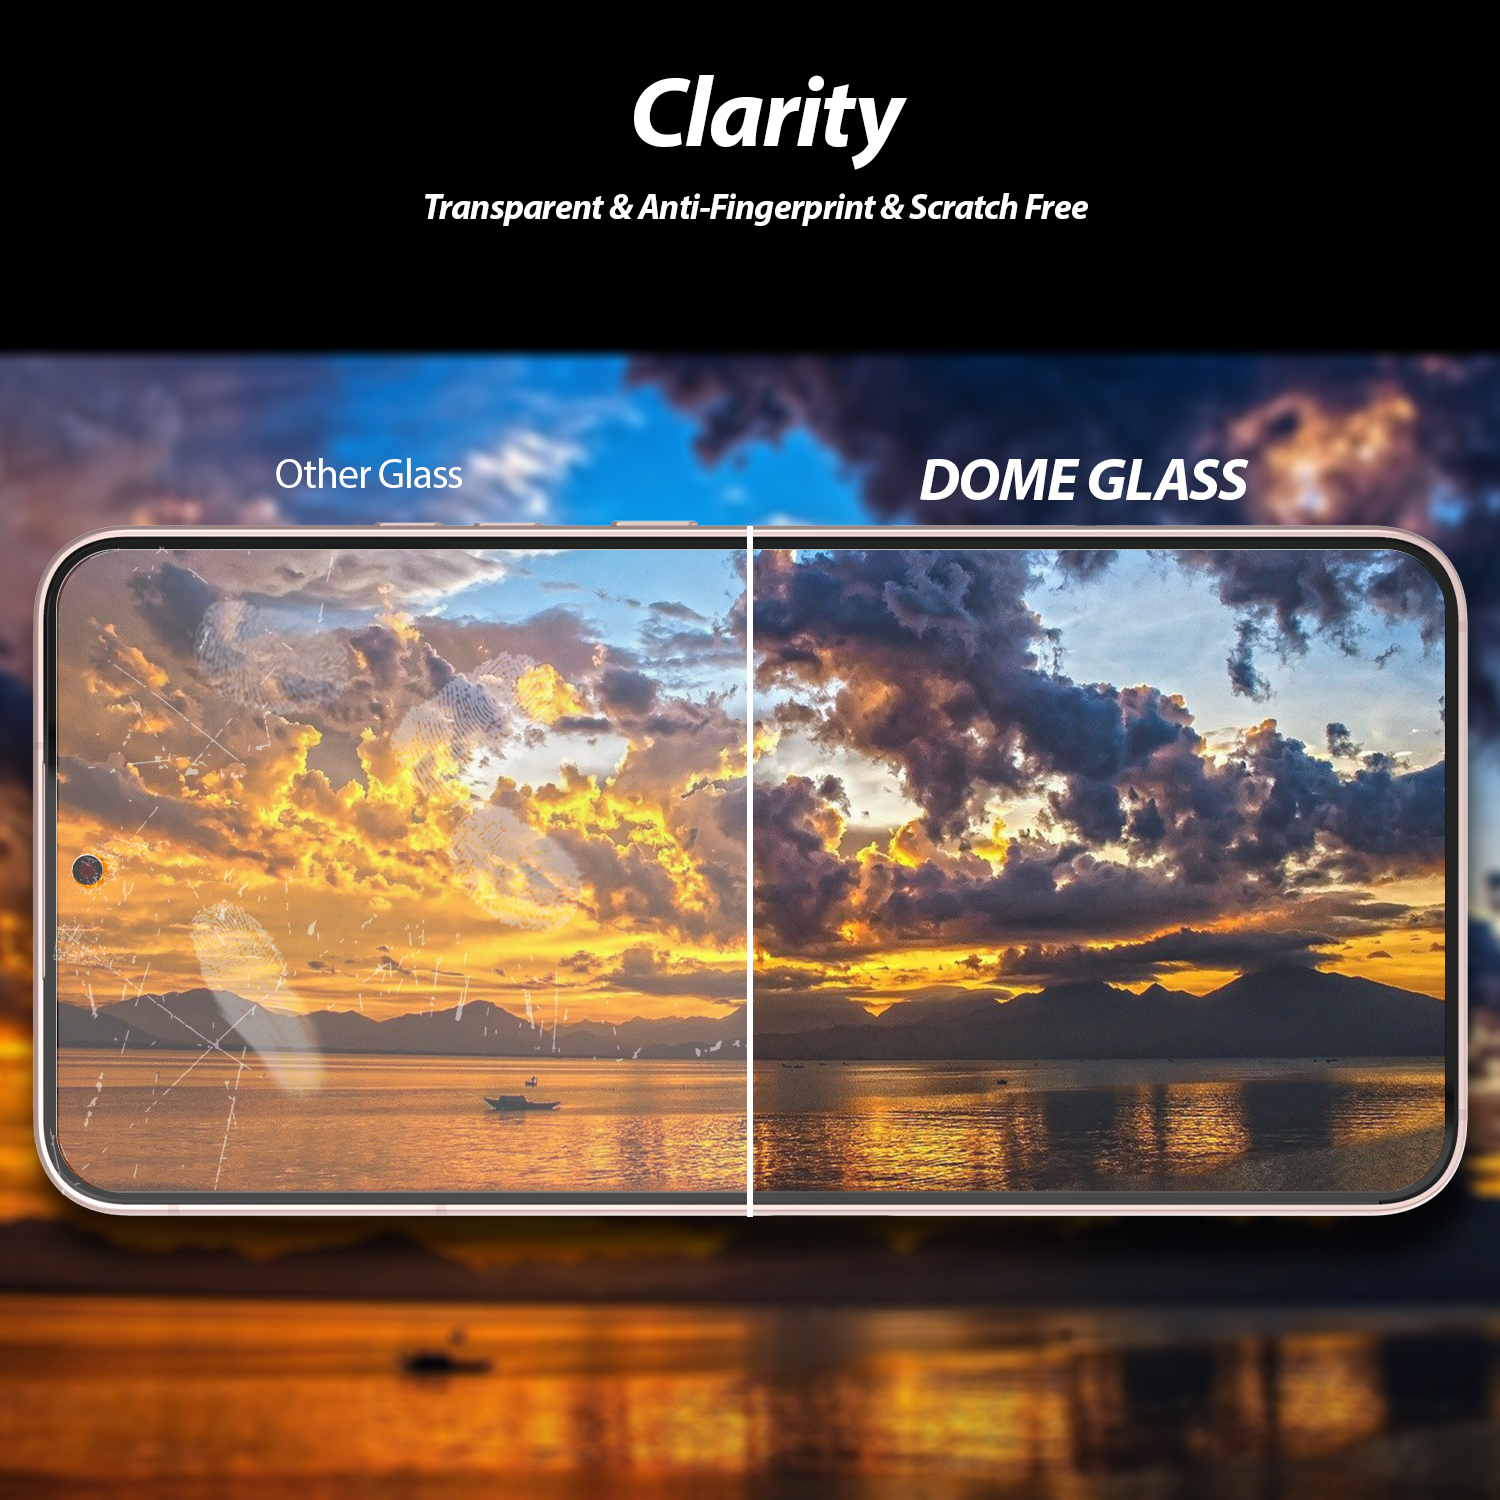 ฟิล์มกระจกนิรภัย Whitestone Dome Glass - Galaxy S22 Plus - อุปกรณ์การติดแบบครบชุด (ฟิล์ม 2 แผ่น)